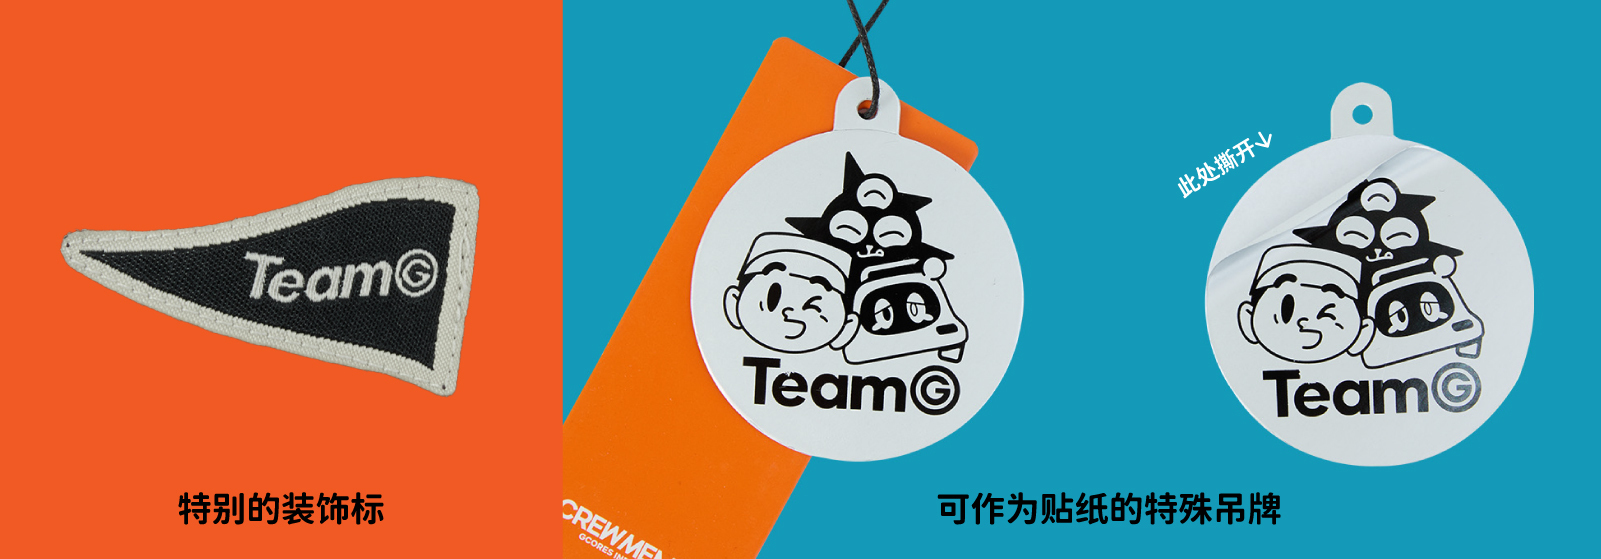 「机组家族 TeamG」系列装饰标设计